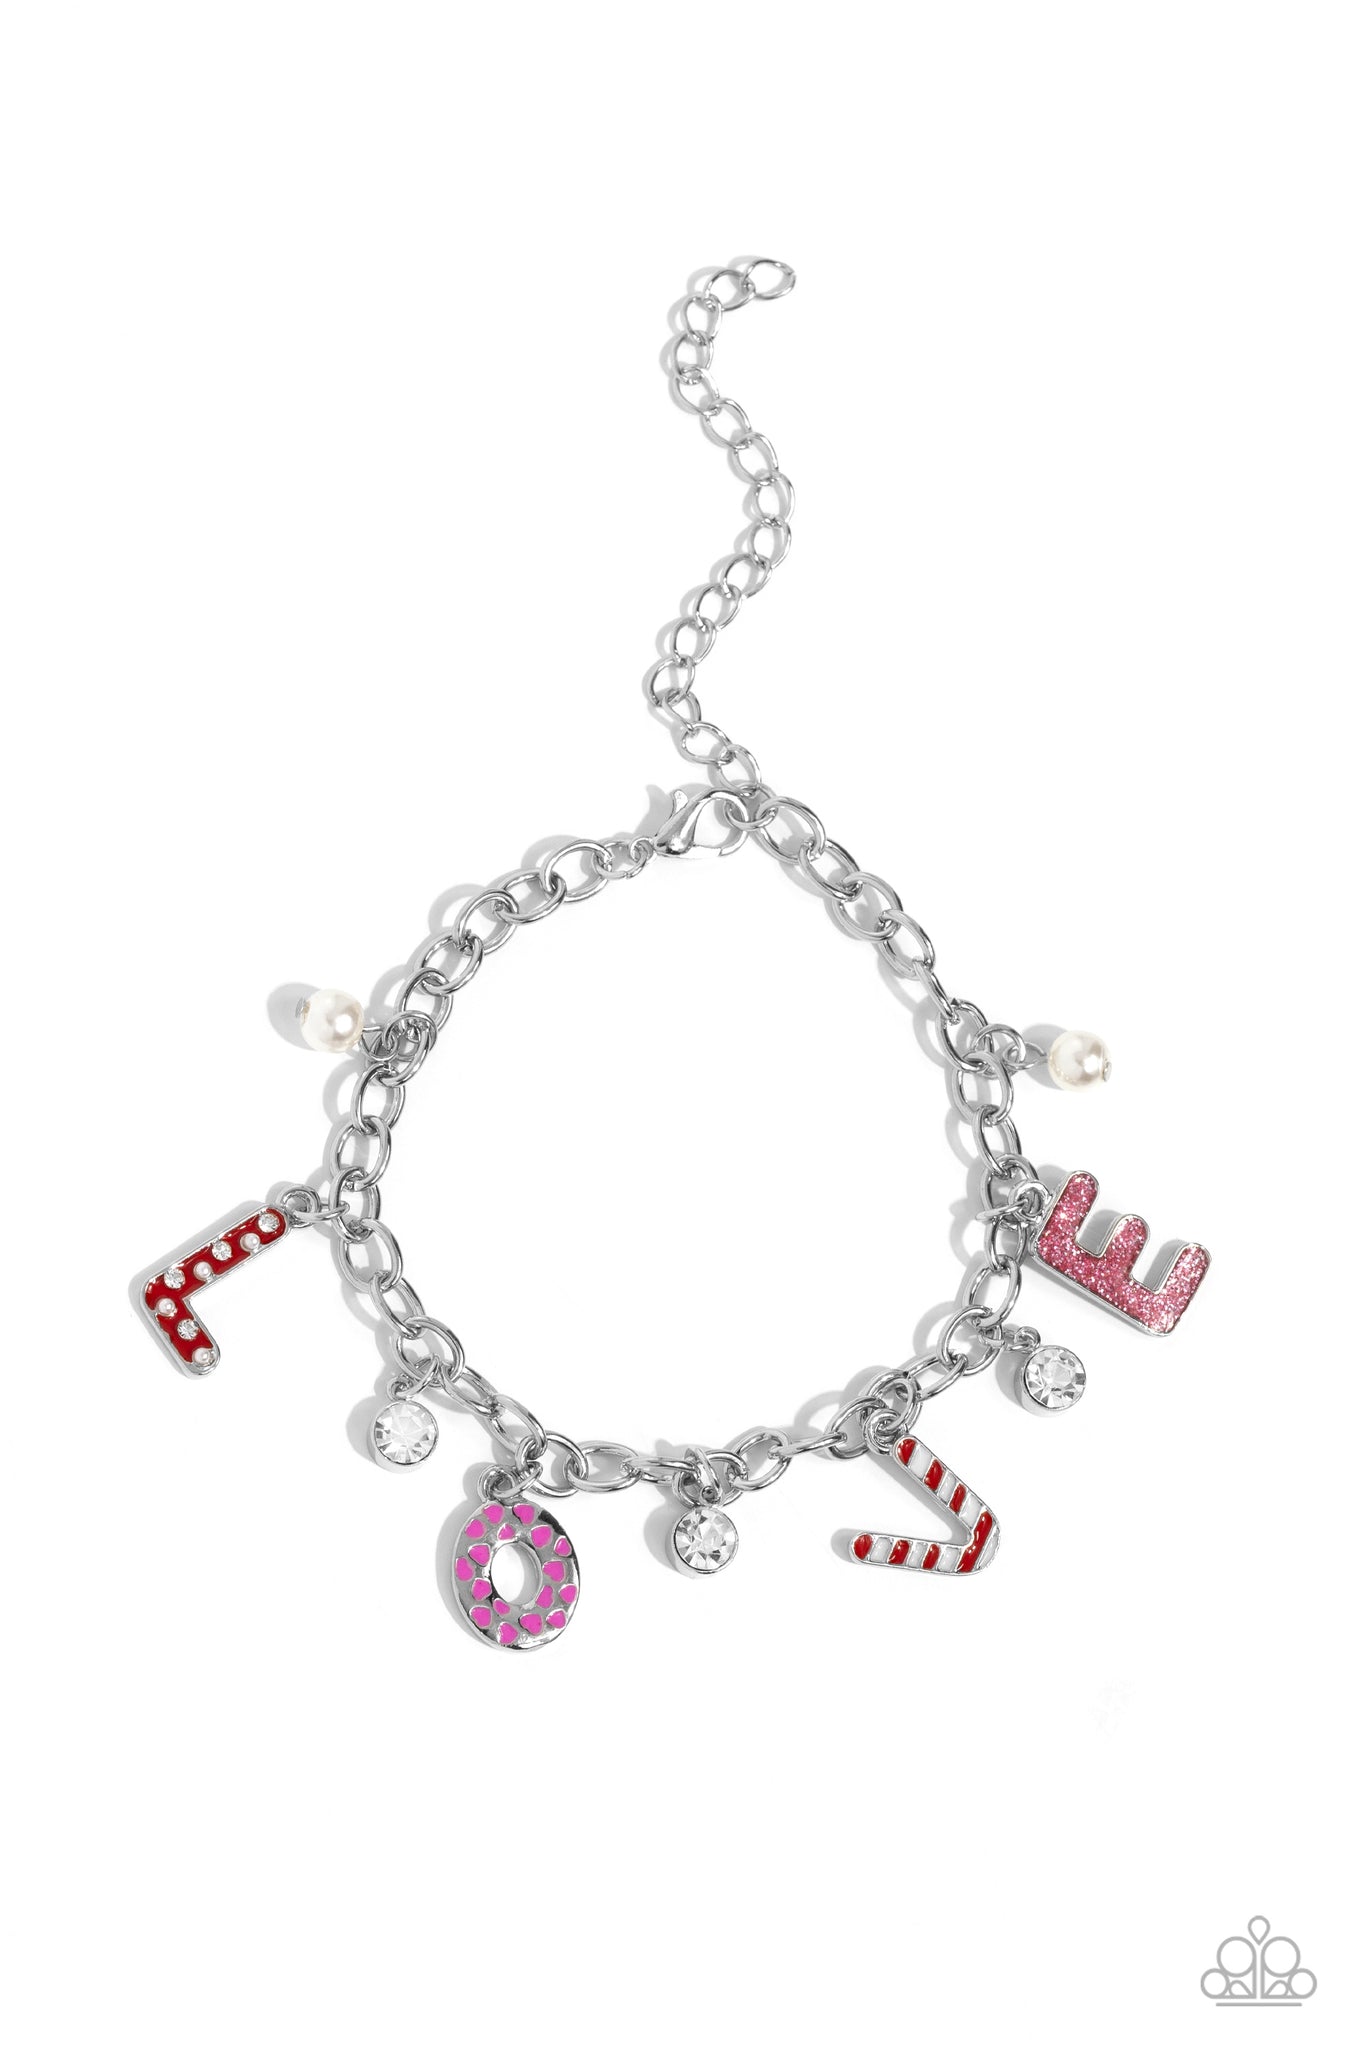 Lovestruck Leisure Pink Bracelet - Jewelry by Bretta